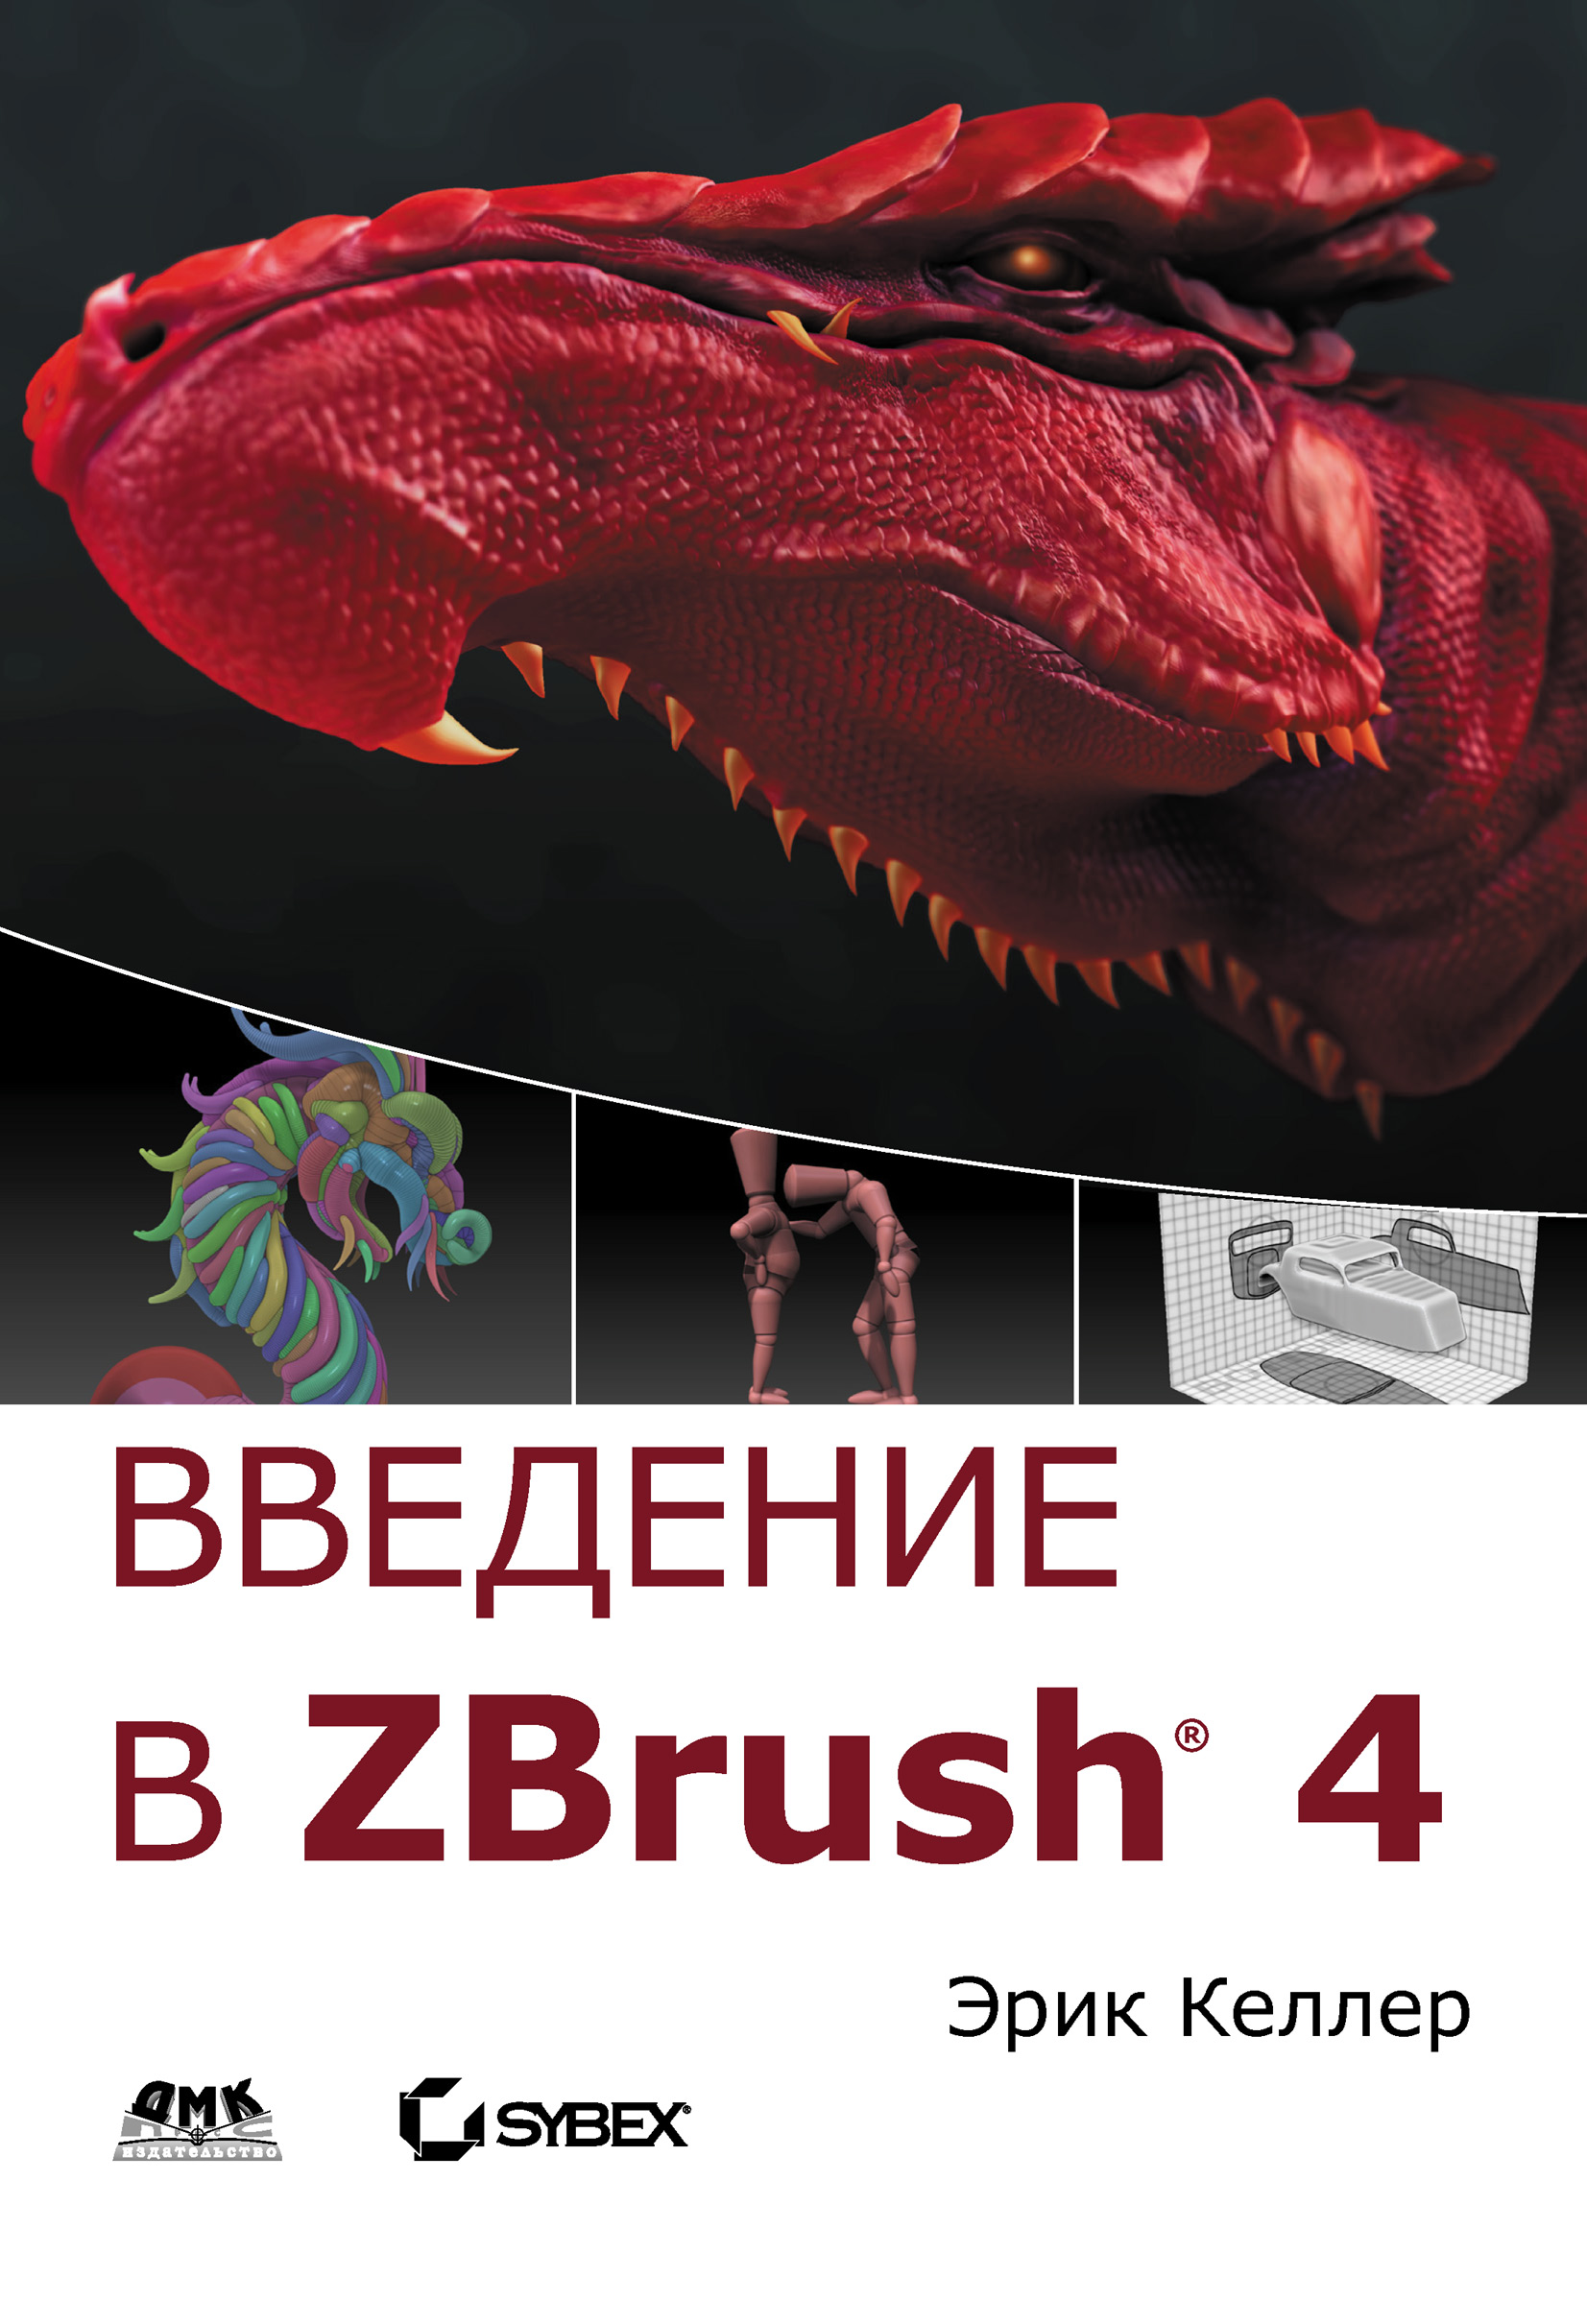 Книга  Введение в ZBrush 4 созданная Эрик Келлер может относится к жанру зарубежная компьютерная литература, программы. Стоимость электронной книги Введение в ZBrush 4 с идентификатором 6656921 составляет 679.00 руб.